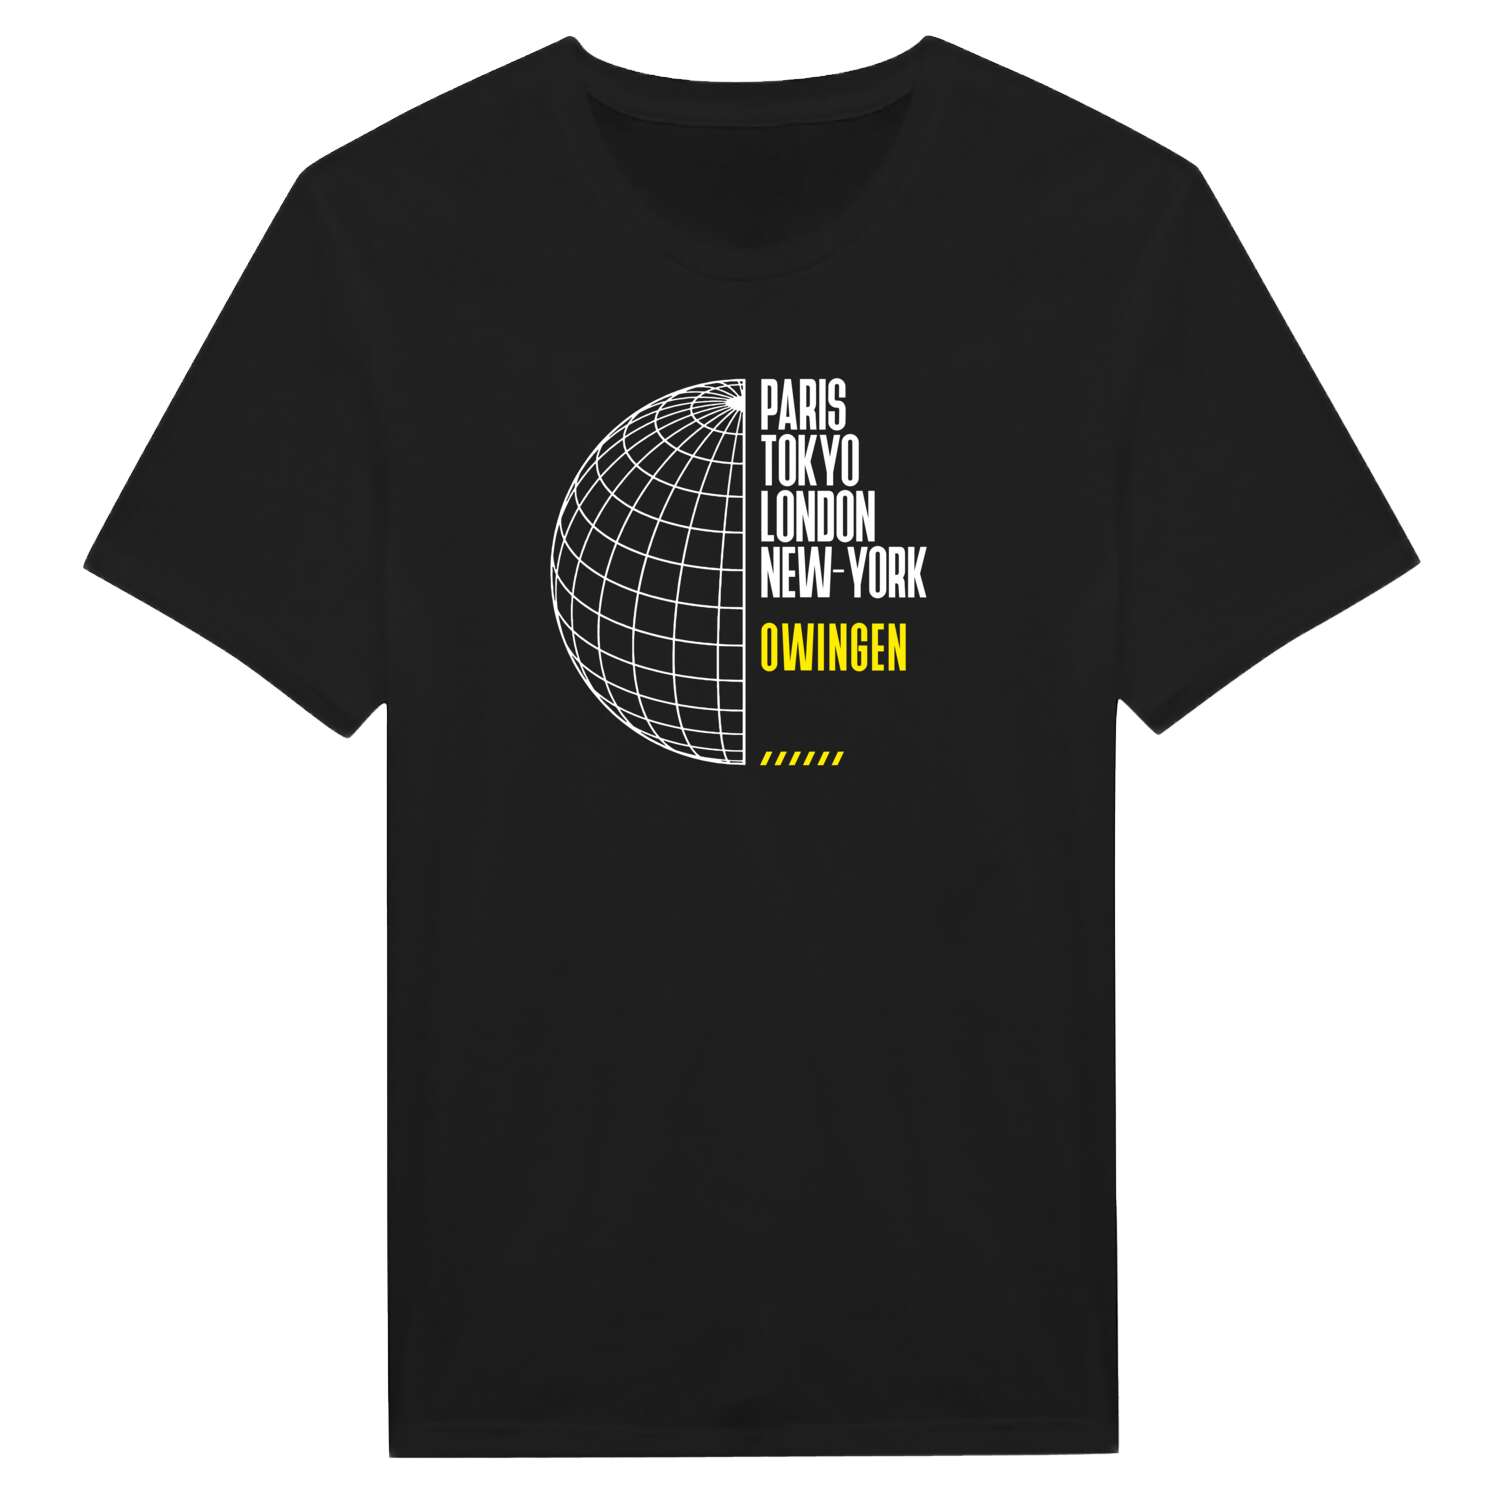 Owingen T-Shirt »Paris Tokyo London«